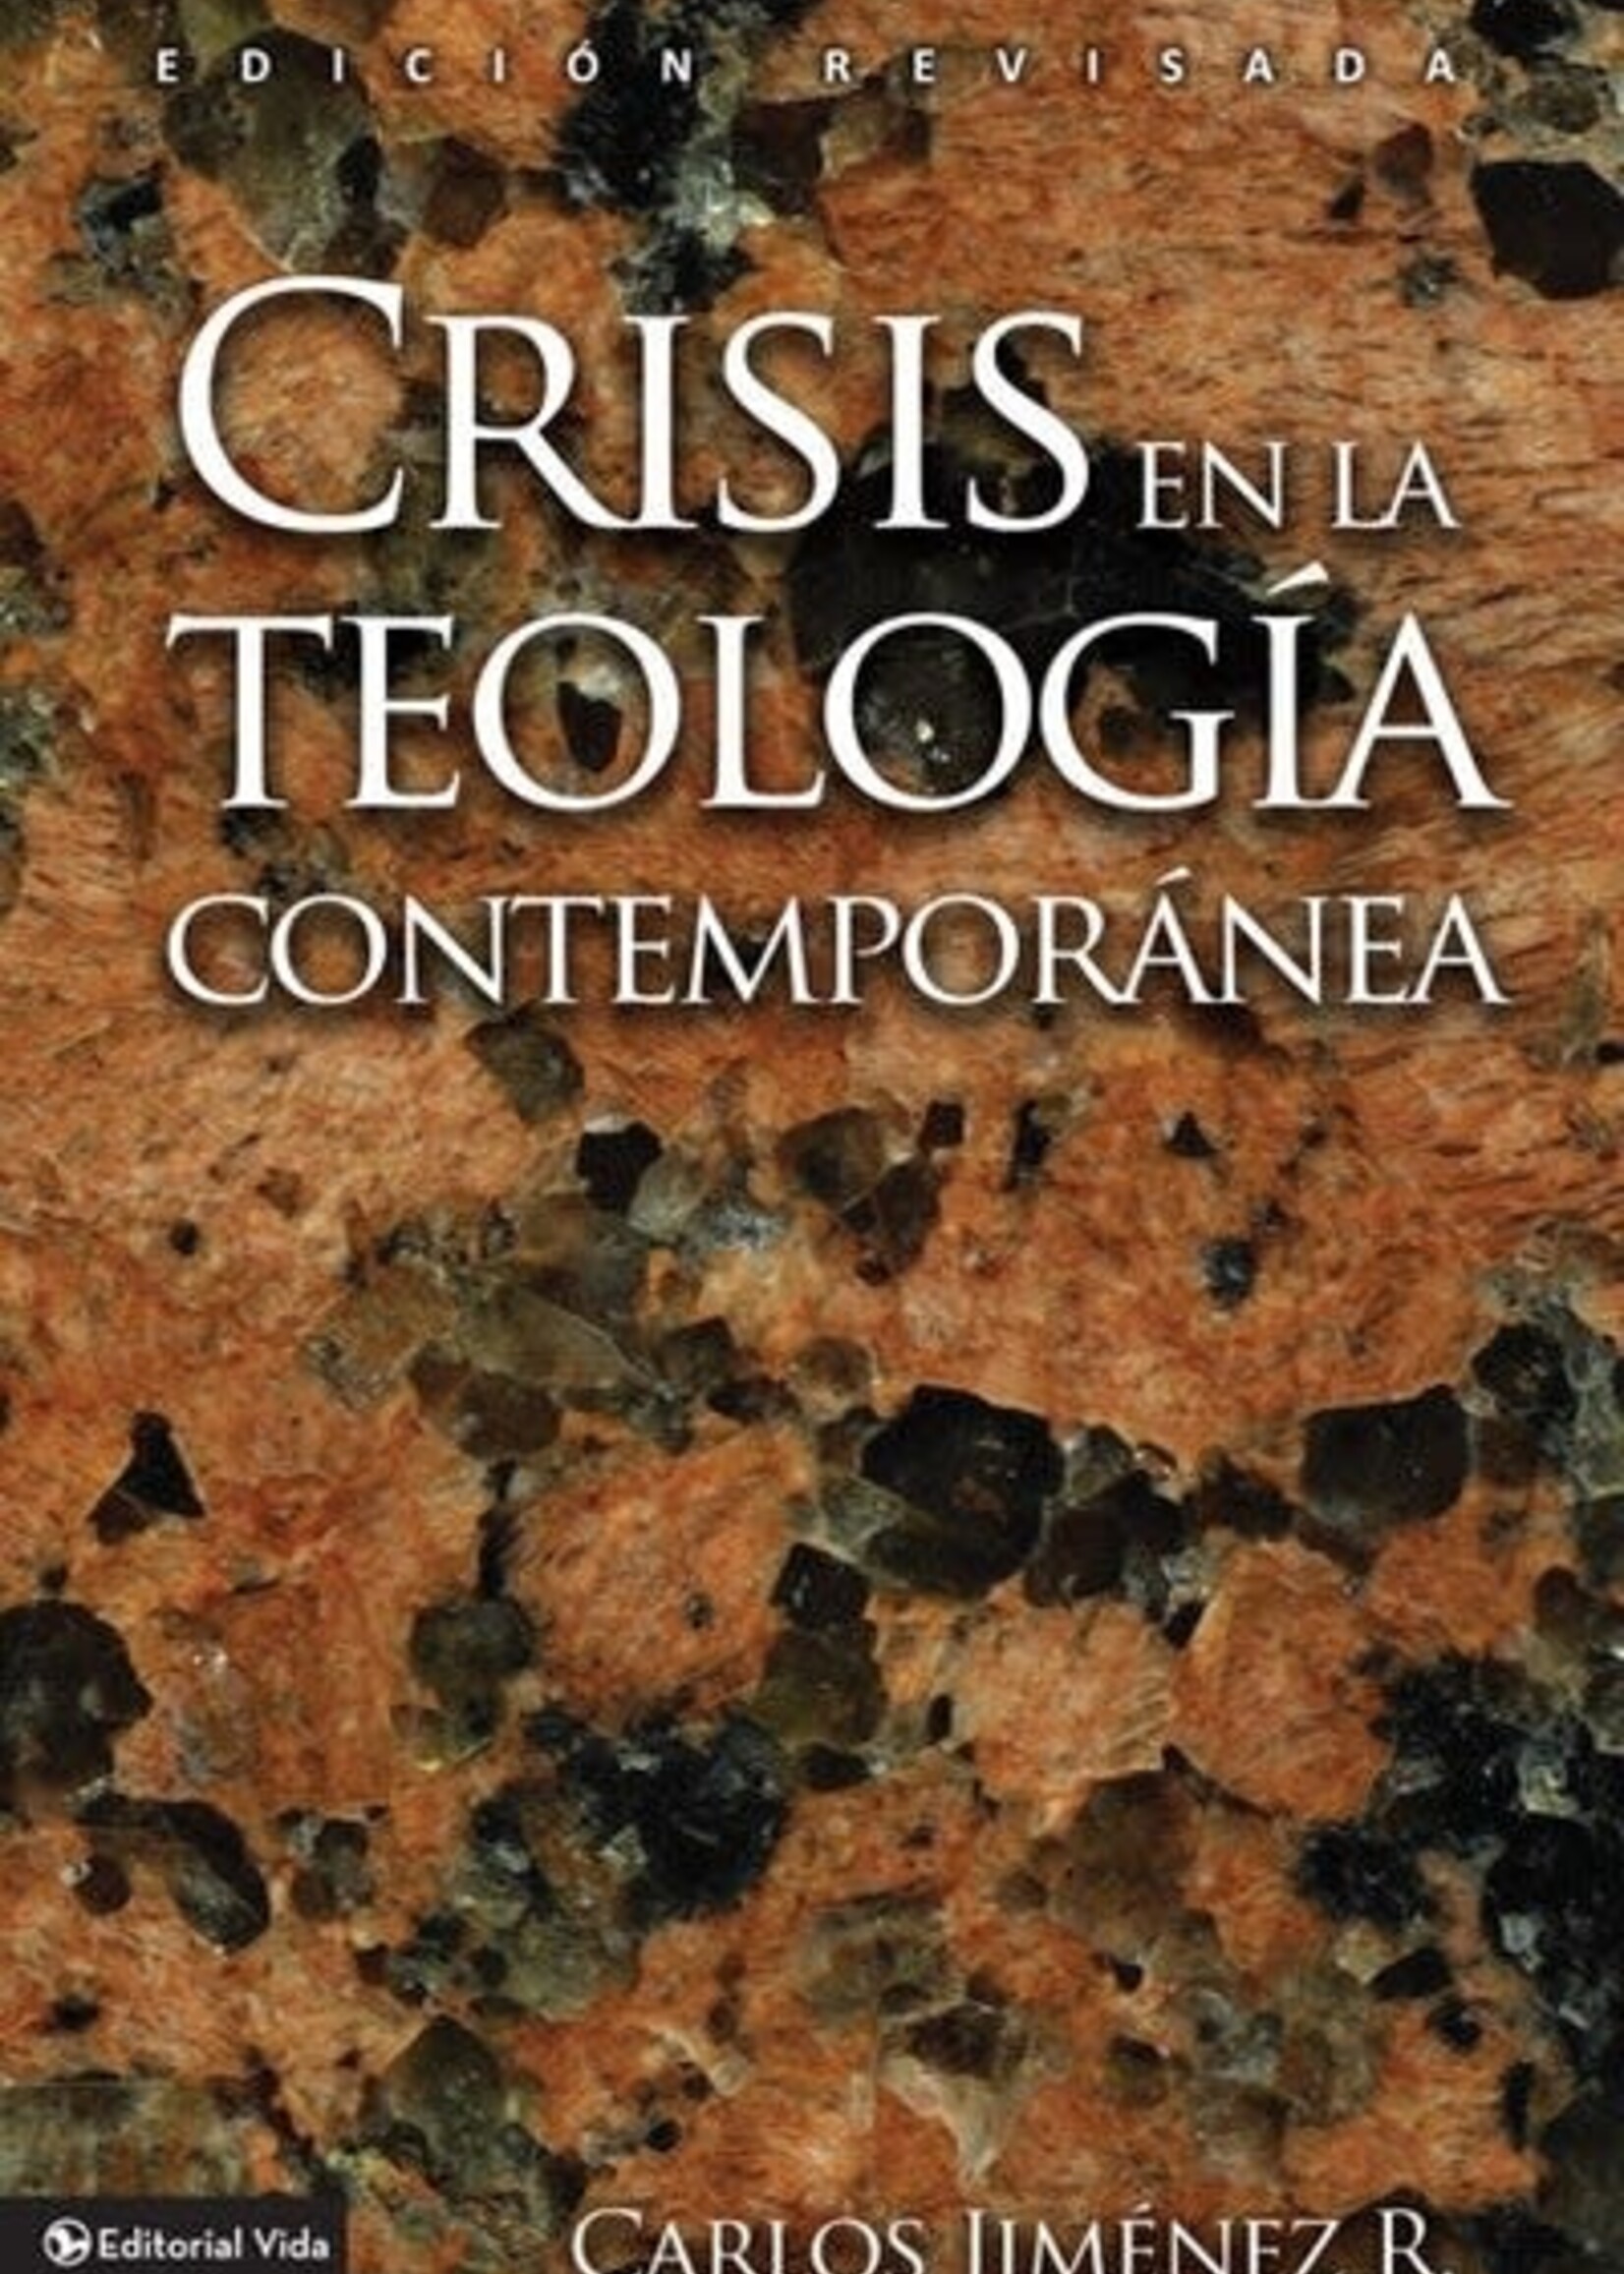 EDITORIAL VIDA CRISIS EN LA TEOLOGIA CONTEMPORANEA